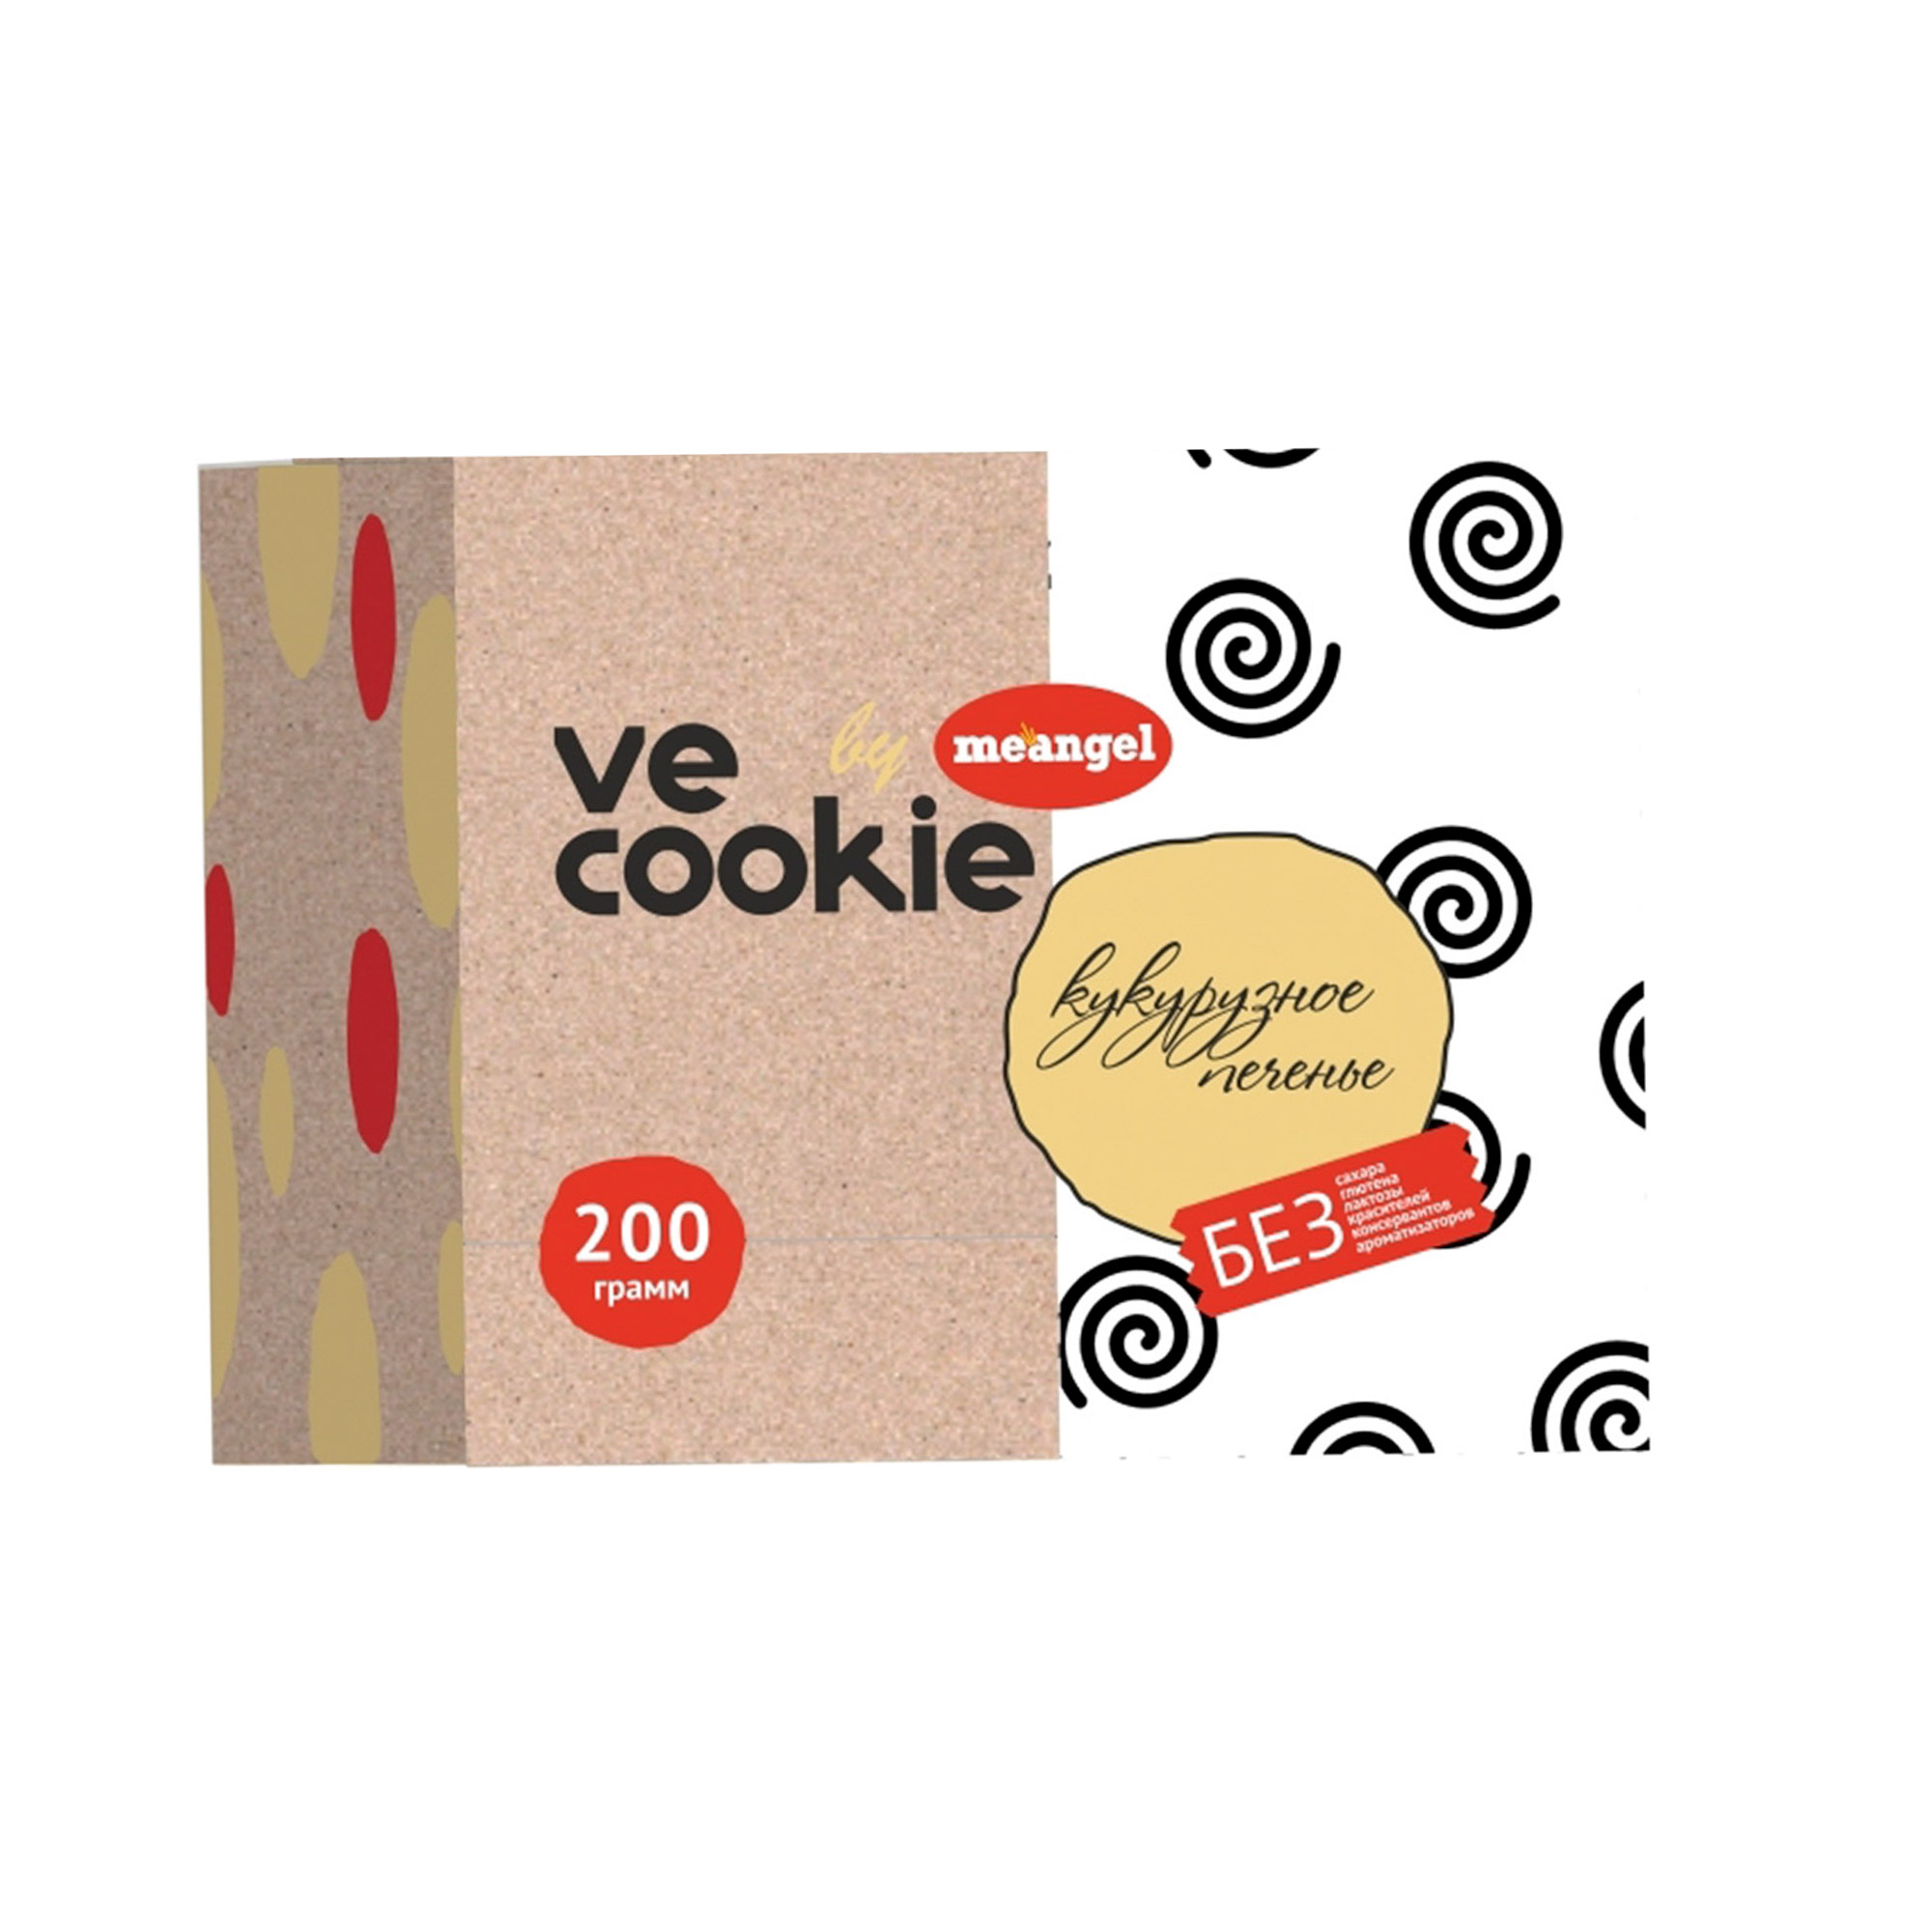 Печенье Me angel Ve cookie кукурузное веганское, 200 г